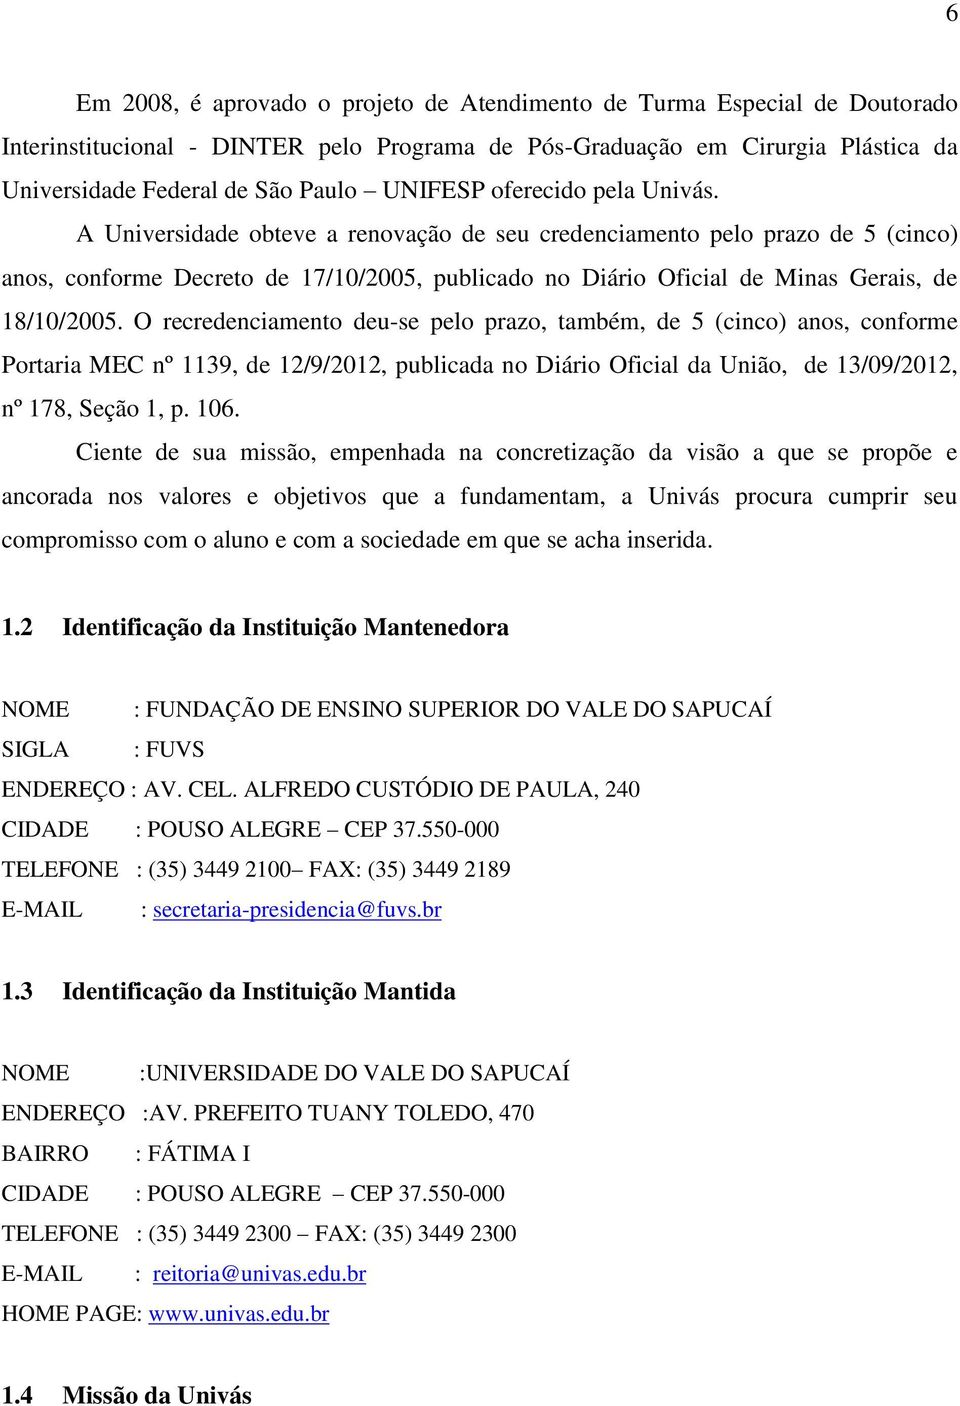 A Universidade obteve a renovação de seu credenciamento pelo prazo de 5 (cinco) anos, conforme Decreto de 17/10/2005, publicado no Diário Oficial de Minas Gerais, de 18/10/2005.